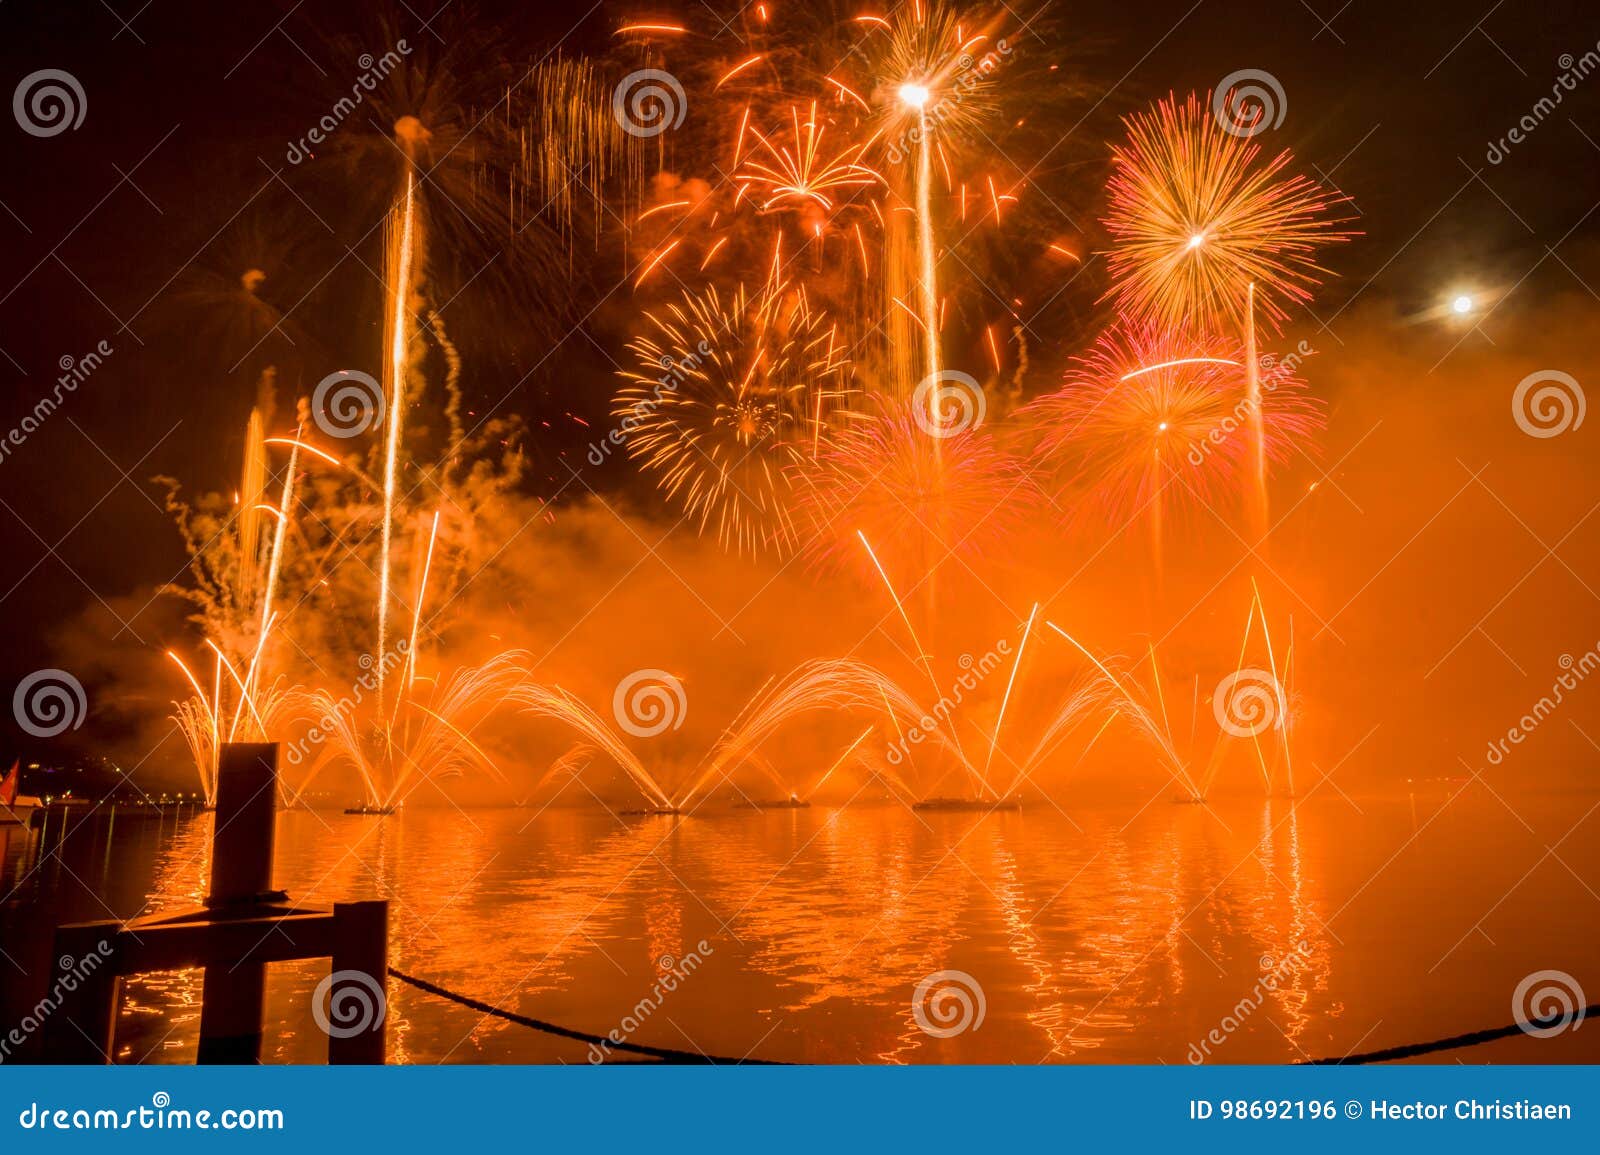 Geneva Switzerland Fireworks On The Lake Stock Photo Image of explode